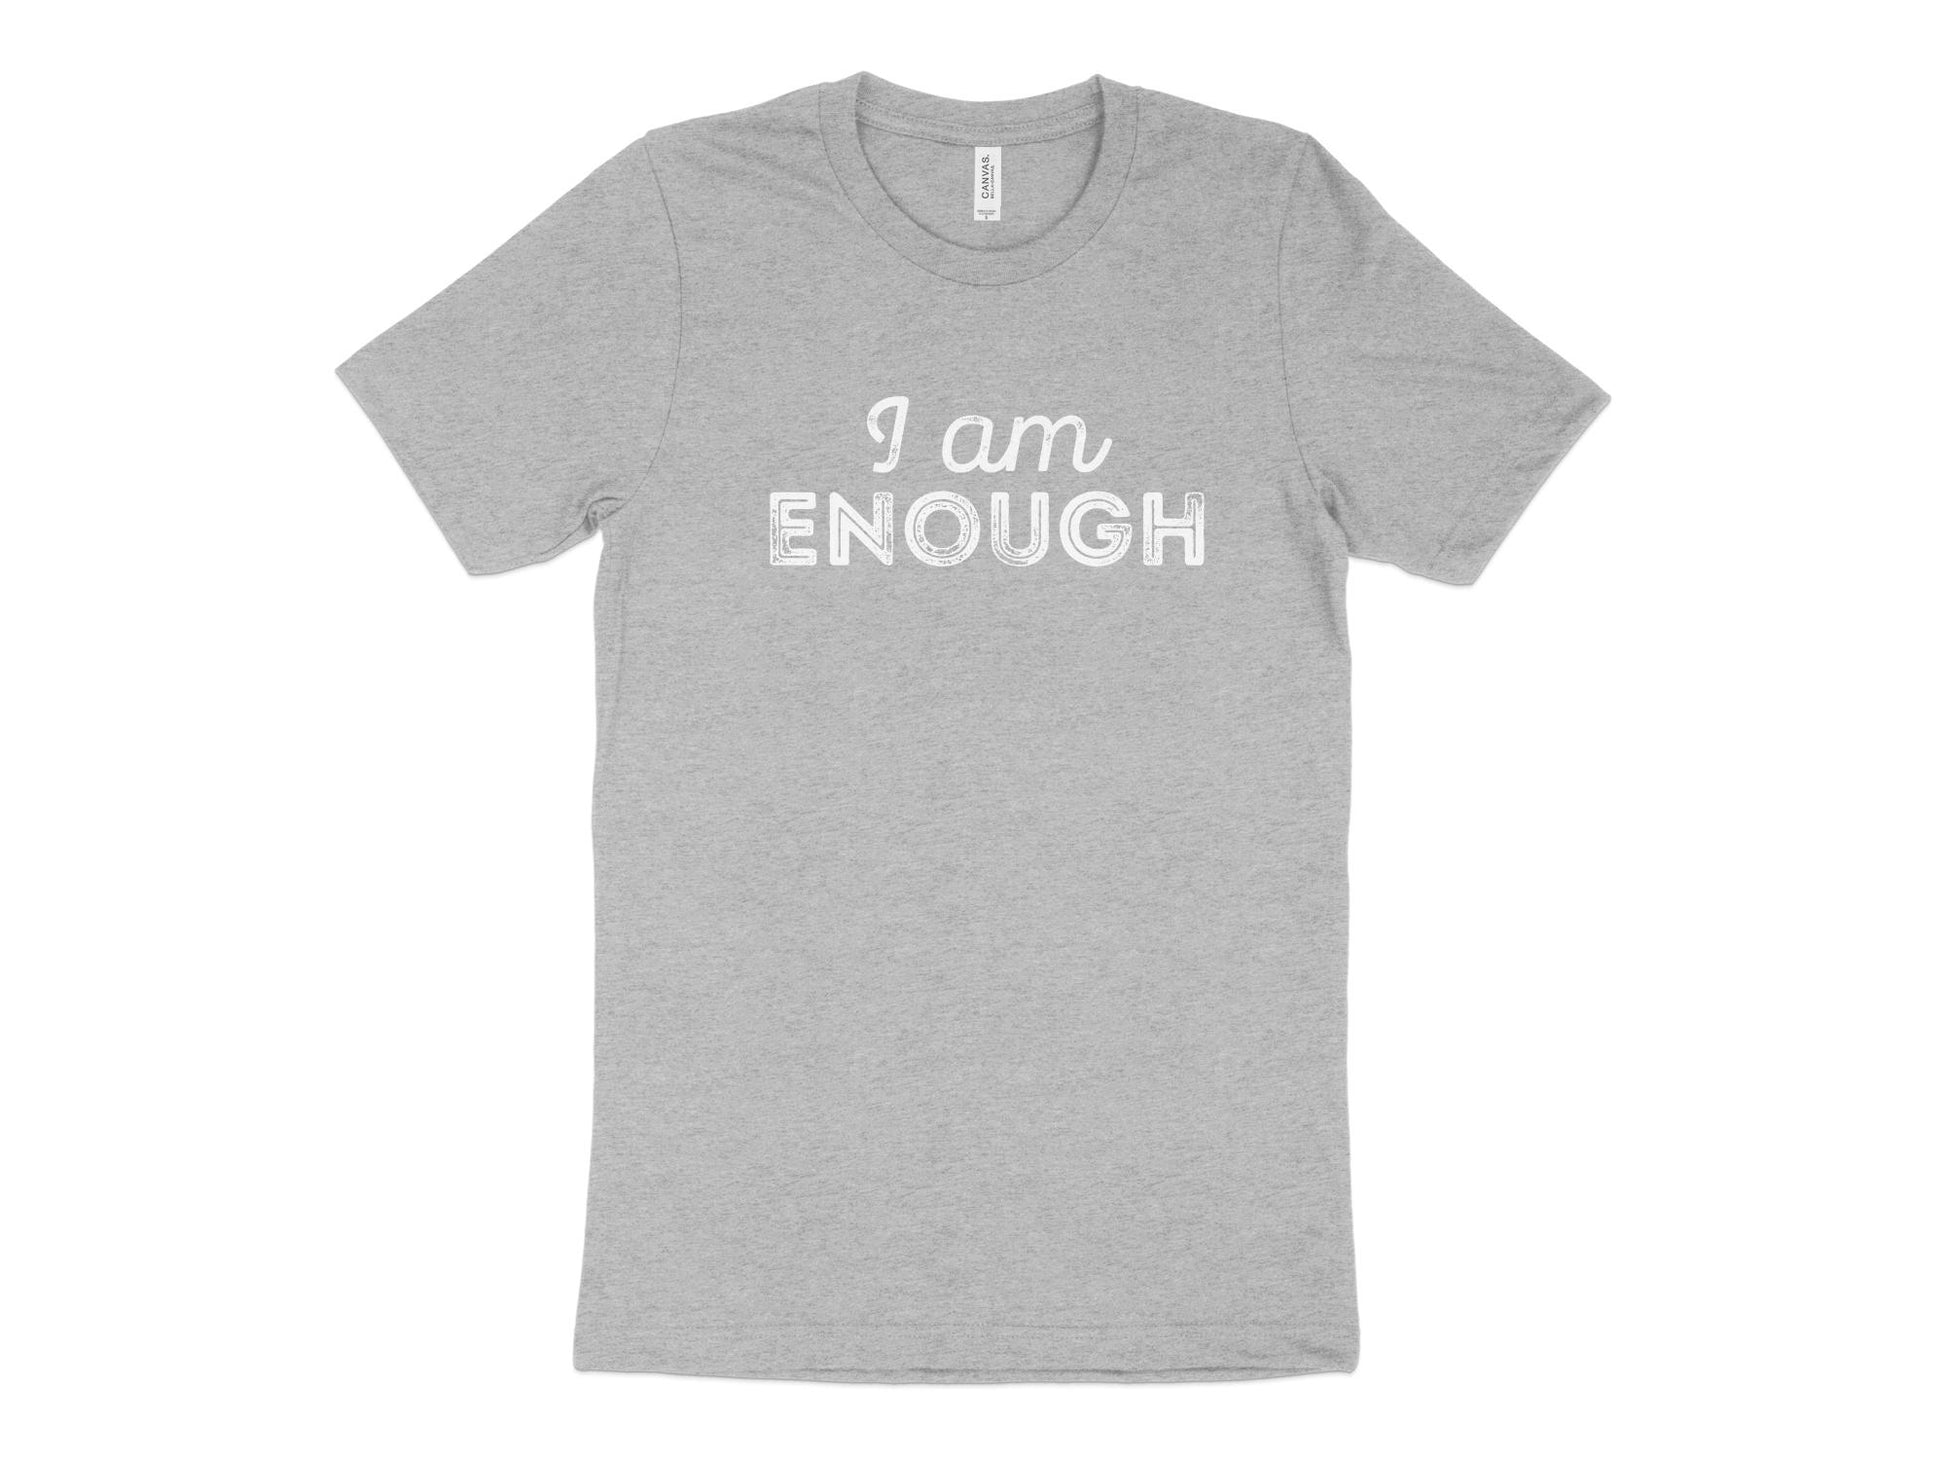 I Am Enough Shirt, heathered gray